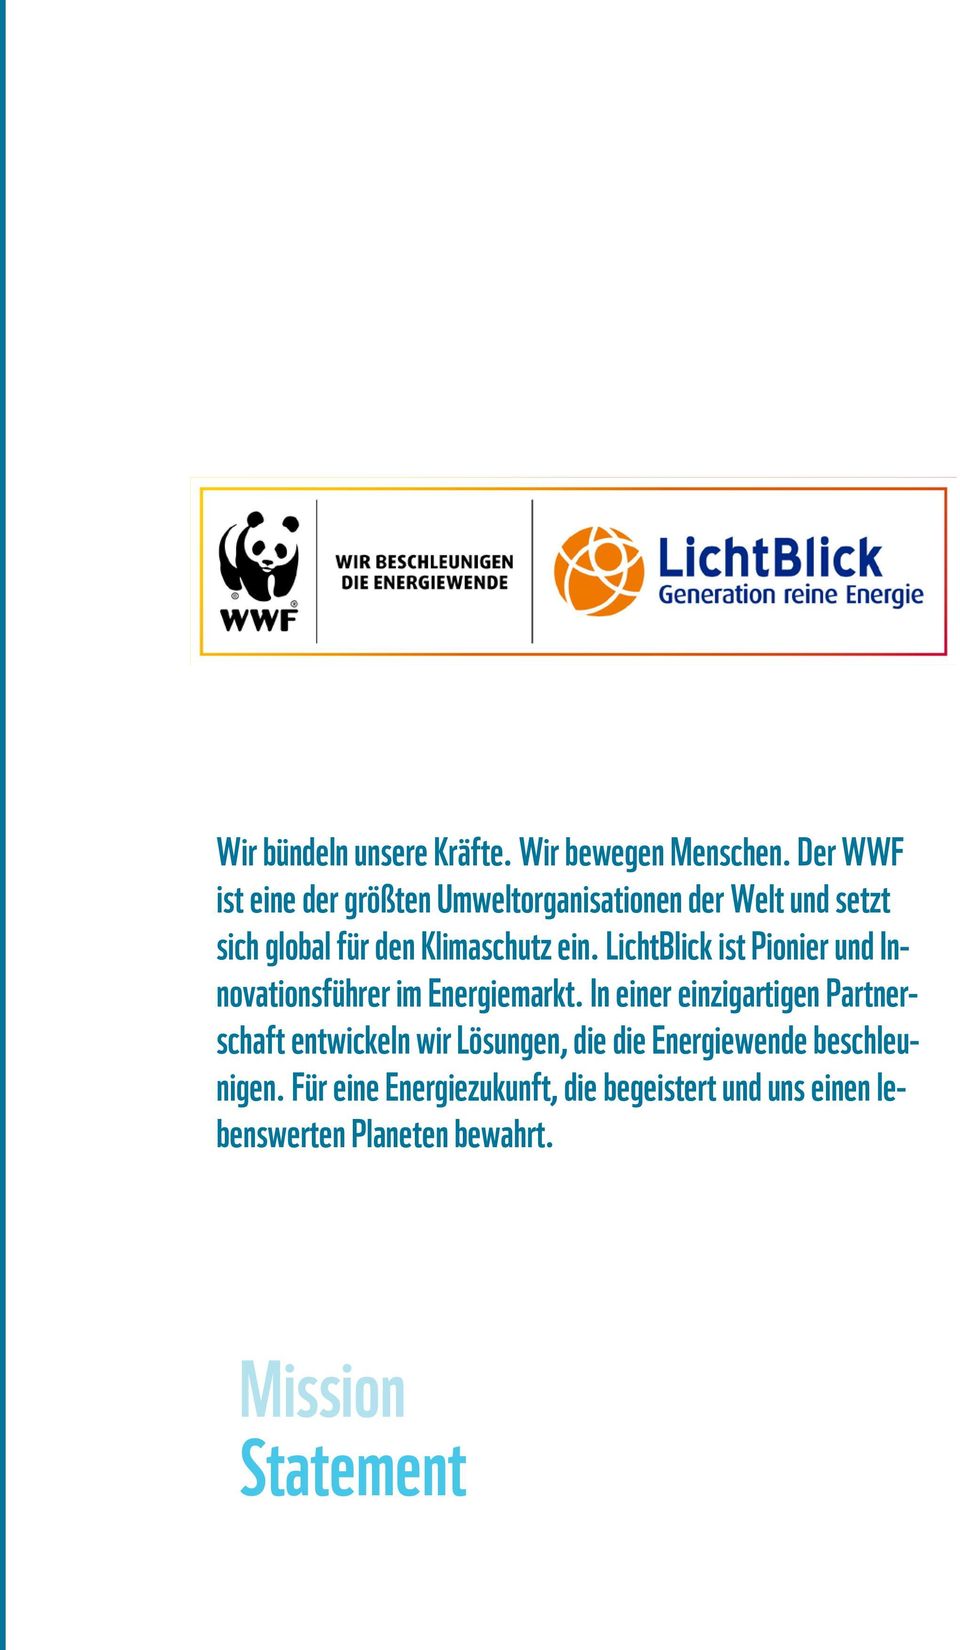 LichtBlick ist Pionier und Innovationsführer im Energiemarkt.